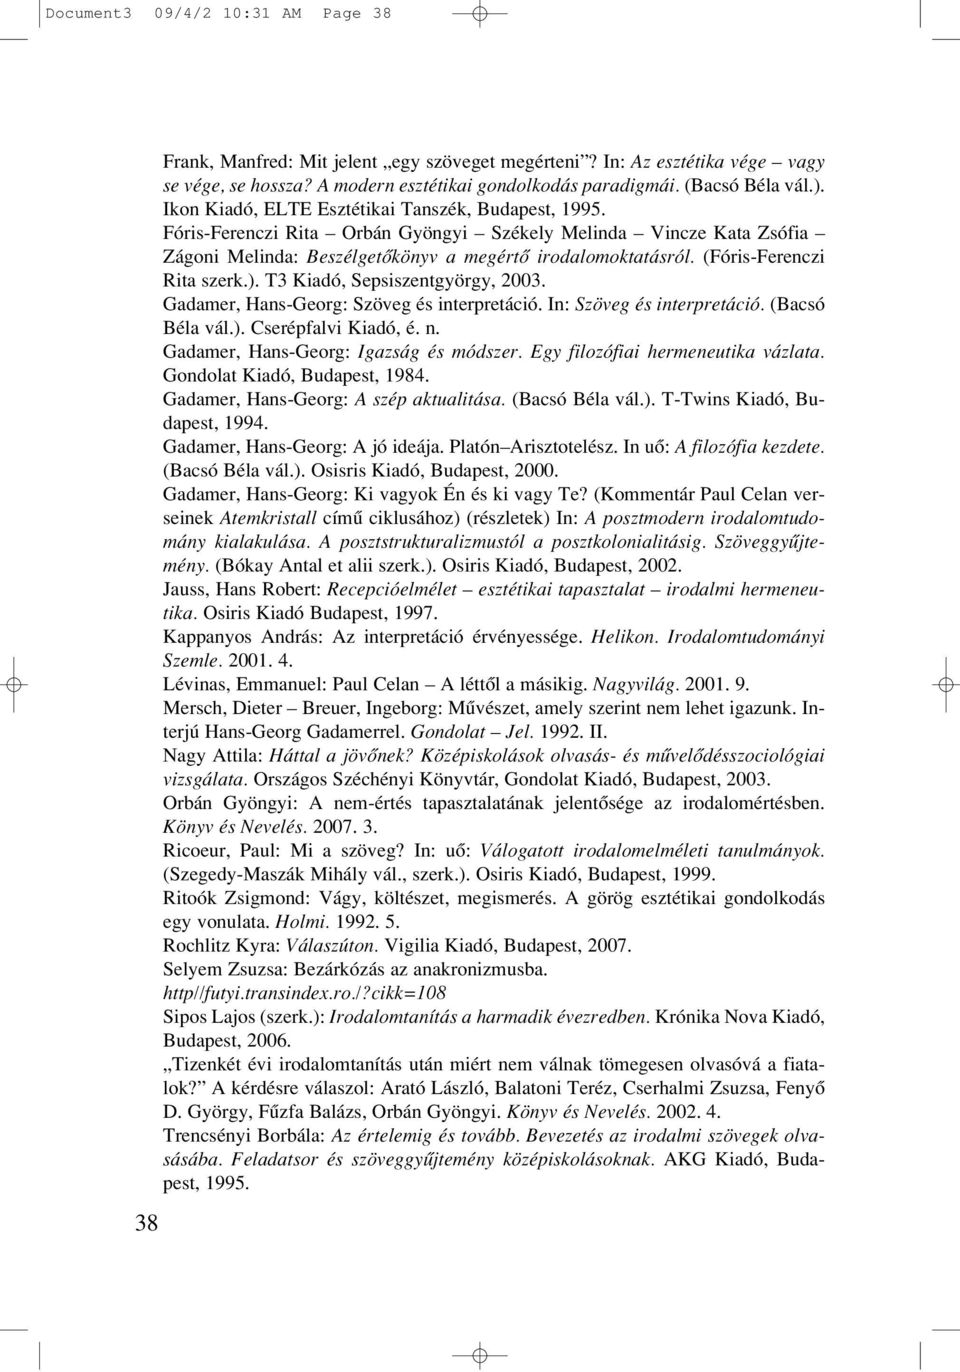 (Fóris-Ferenczi Rita szerk.). T3 Kiadó, Sepsiszentgyörgy, 2003. Gadamer, Hans-Georg: Szöveg és interpretáció. In: Szöveg és interpretáció. (Bacsó Béla vál.). Cserépfalvi Kiadó, é. n.